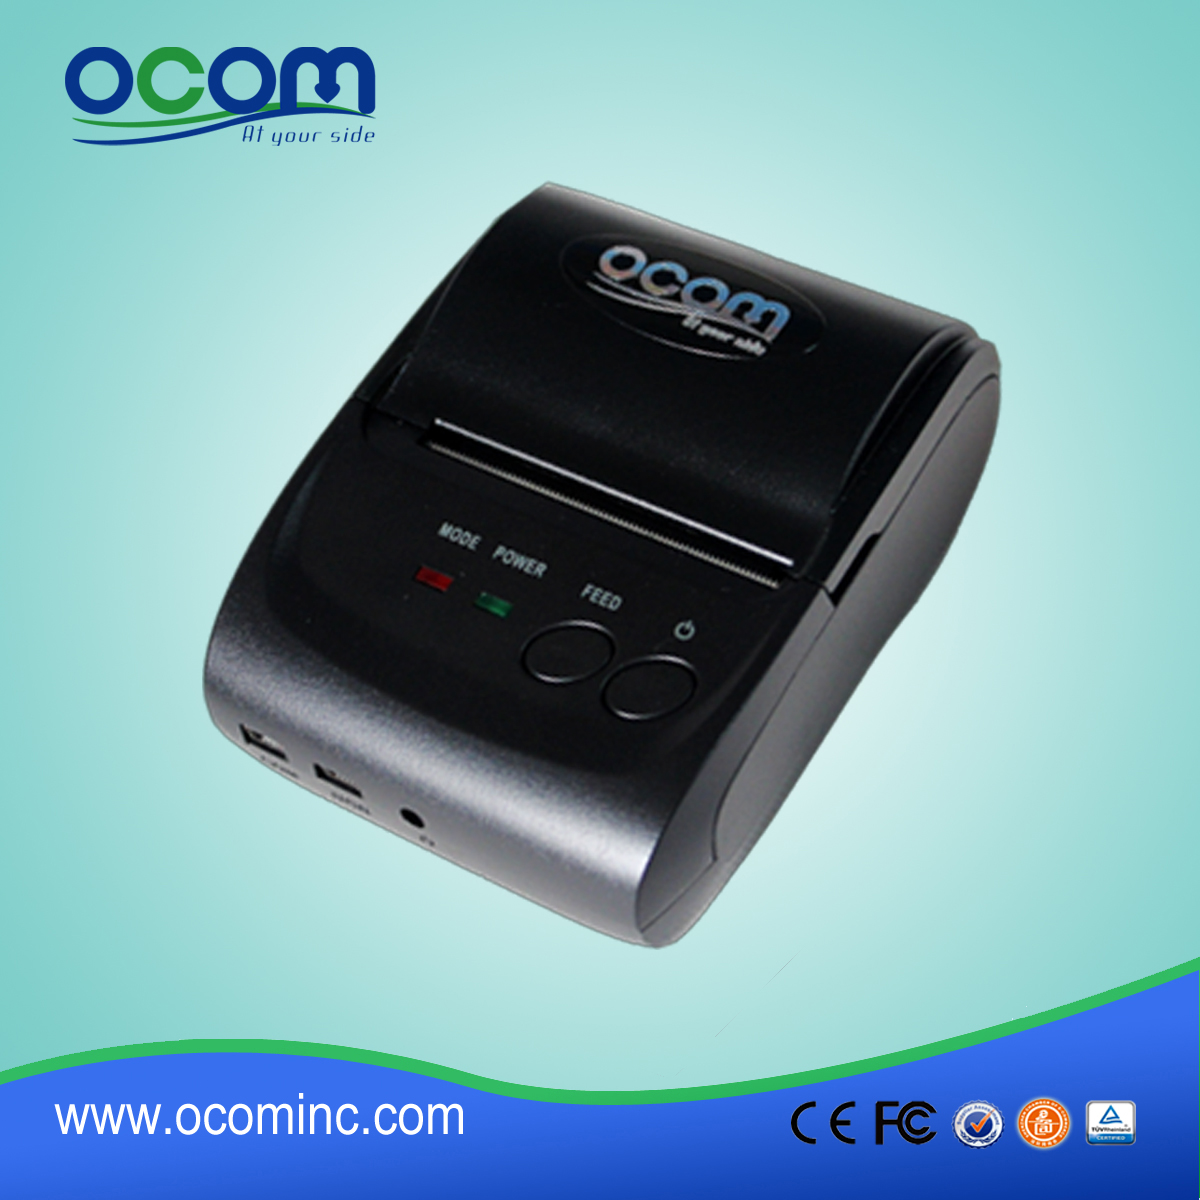 OCPP-M05: draagbare thermische printer prijs, android thermische printer pos printer